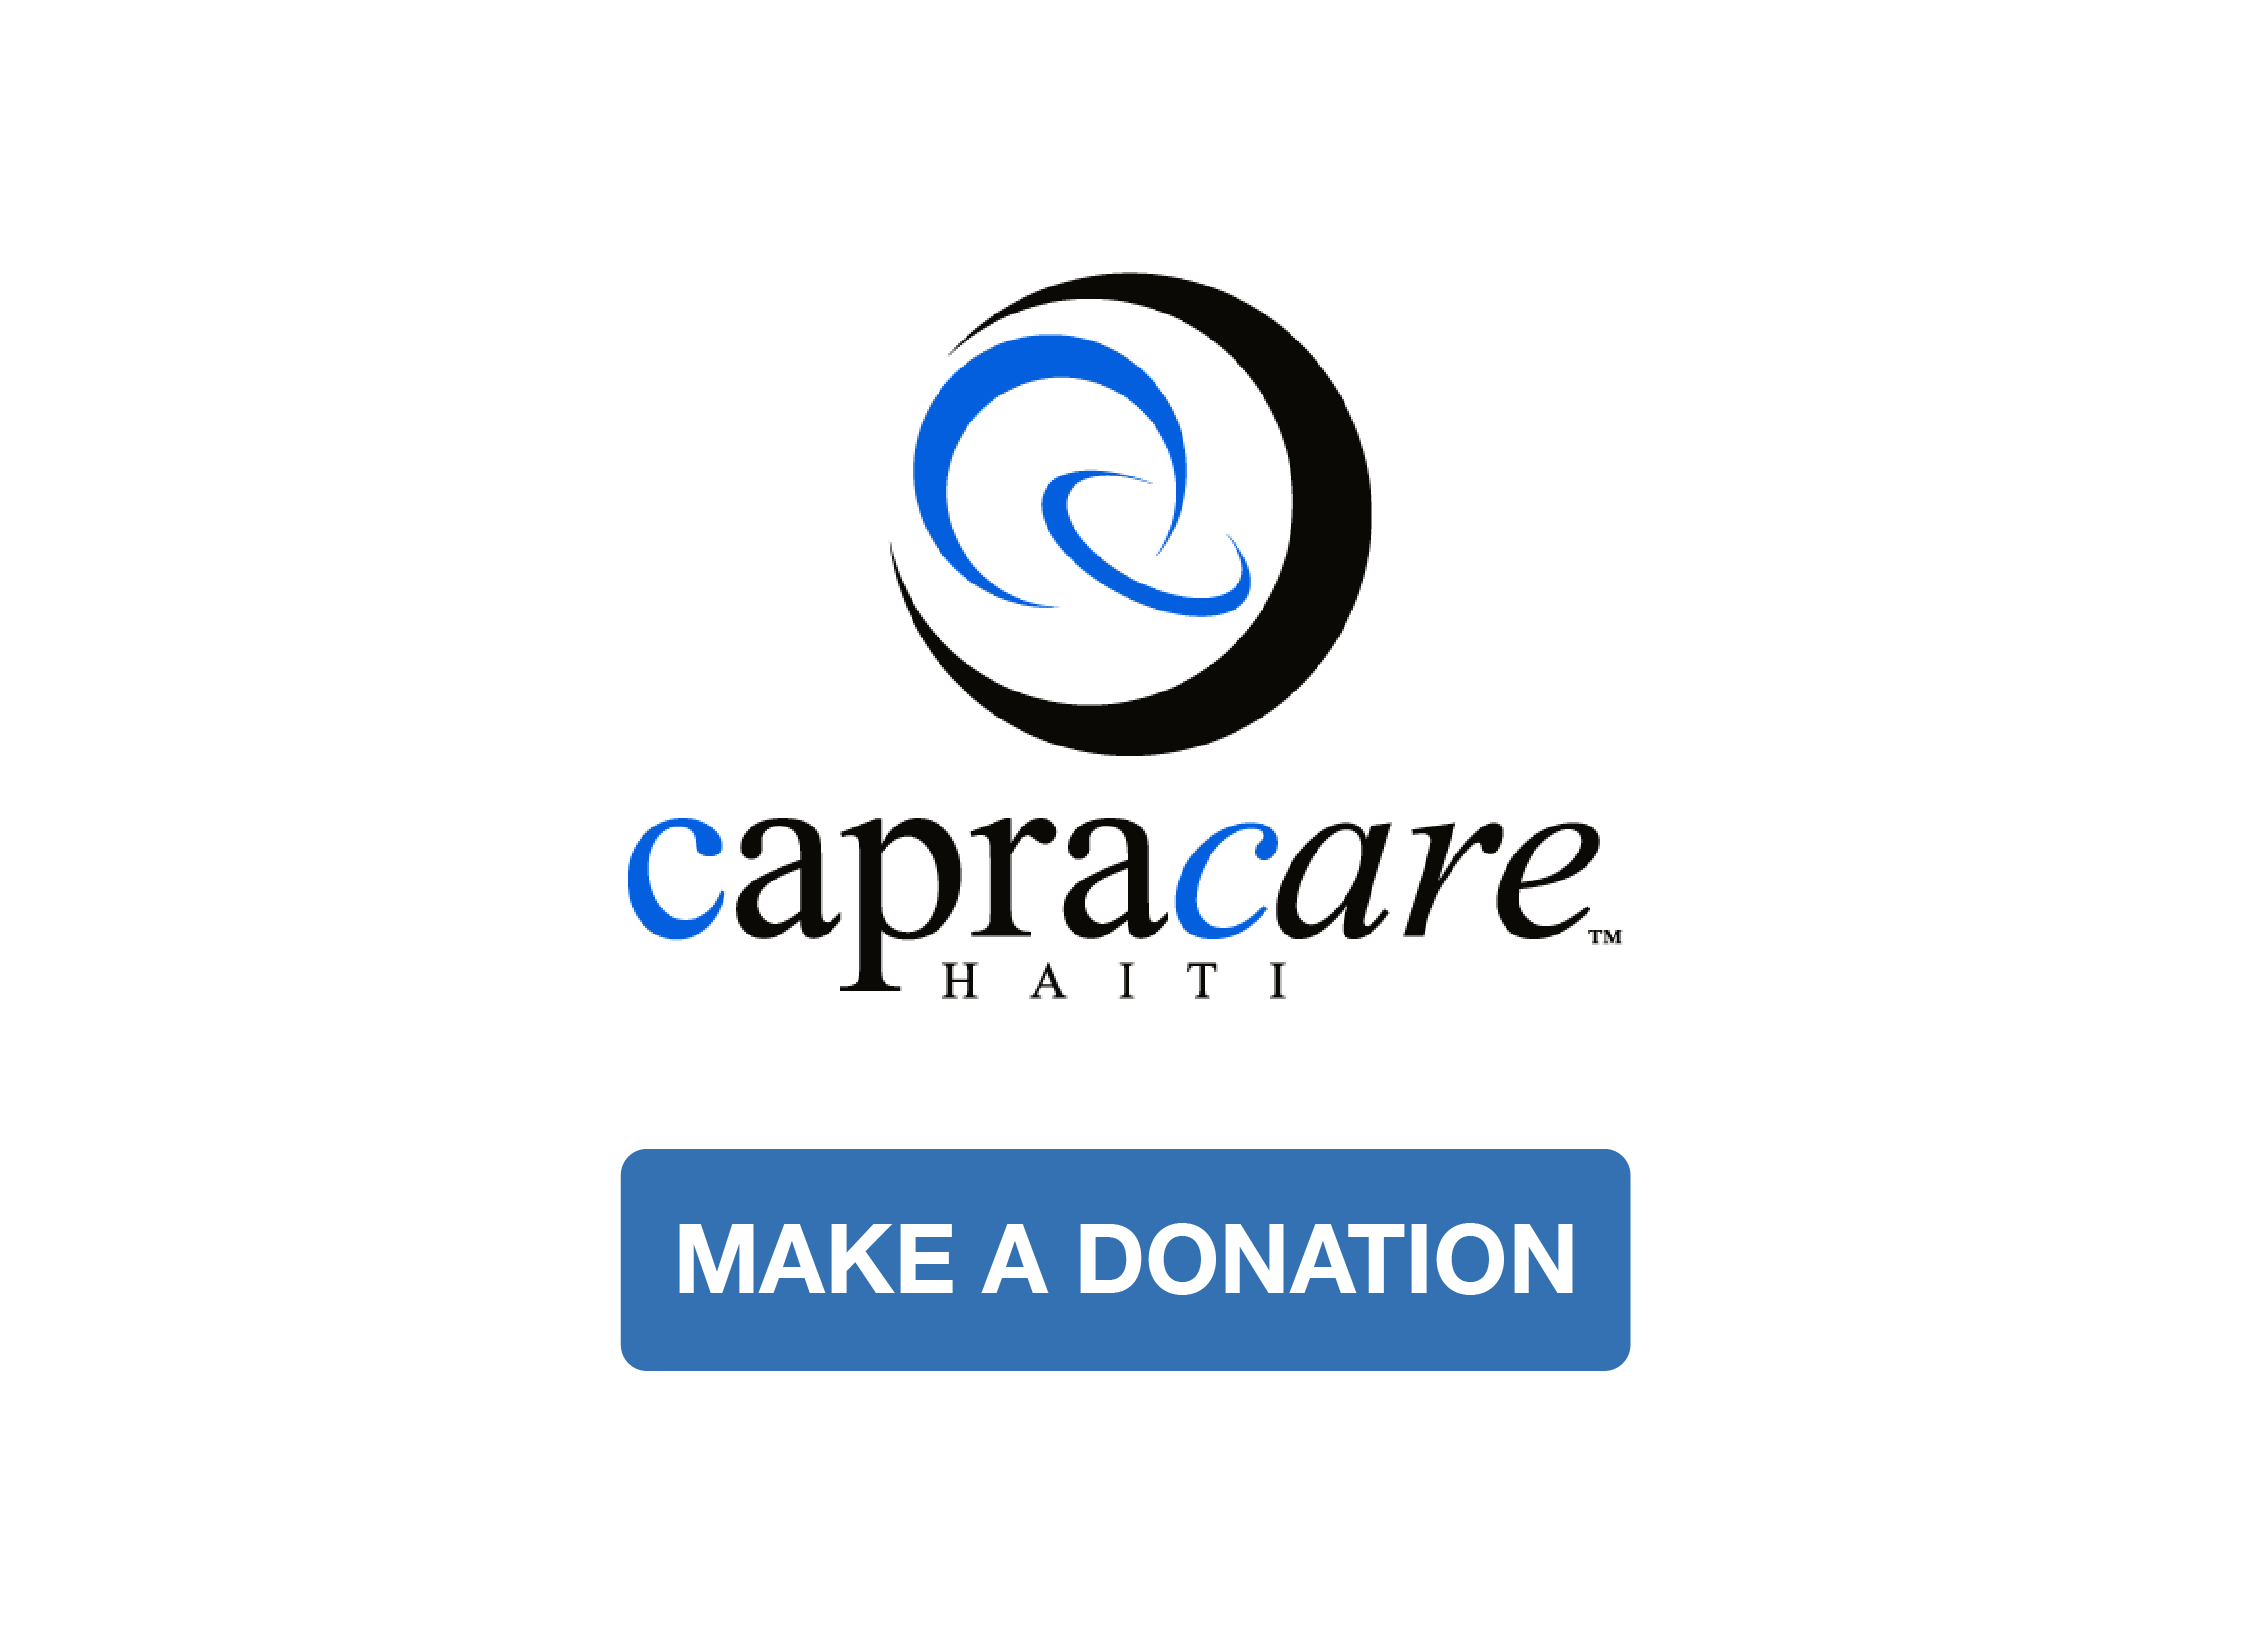 CapraCare Haiti Logo